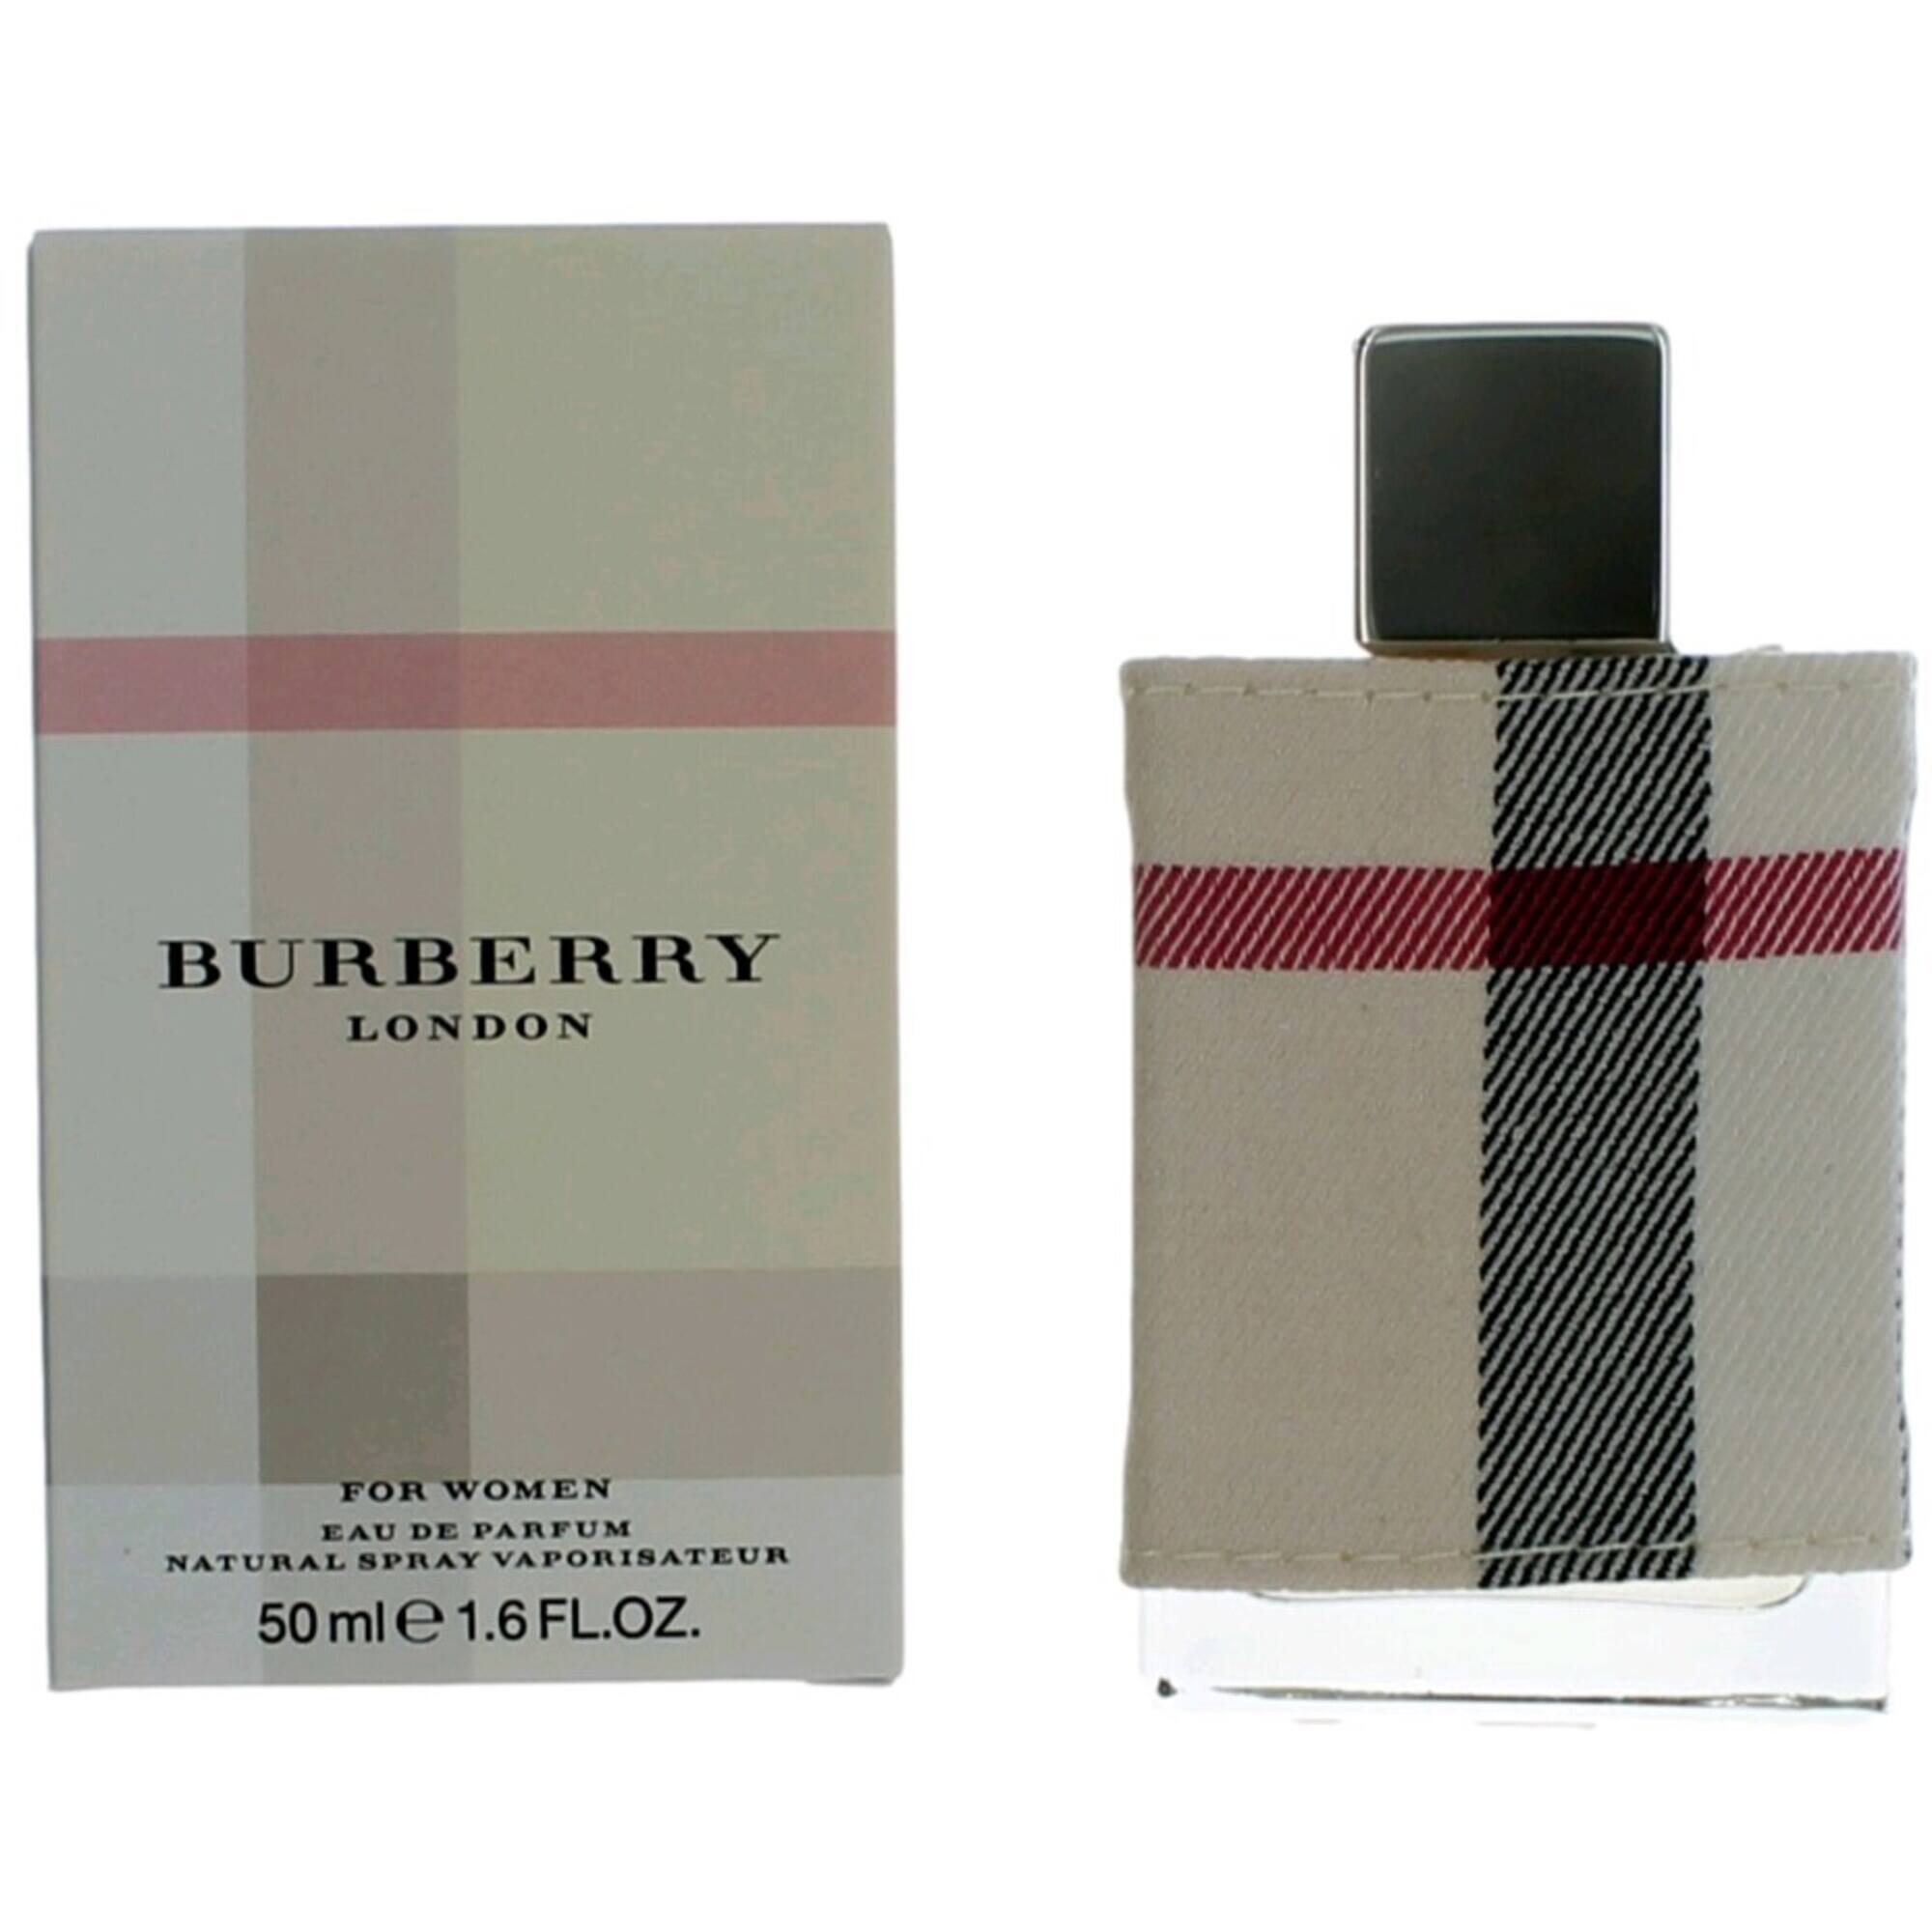 Burberry Women's Eau De Parfum Spray - London Elegant Floral Fragrance, 1.6 oz